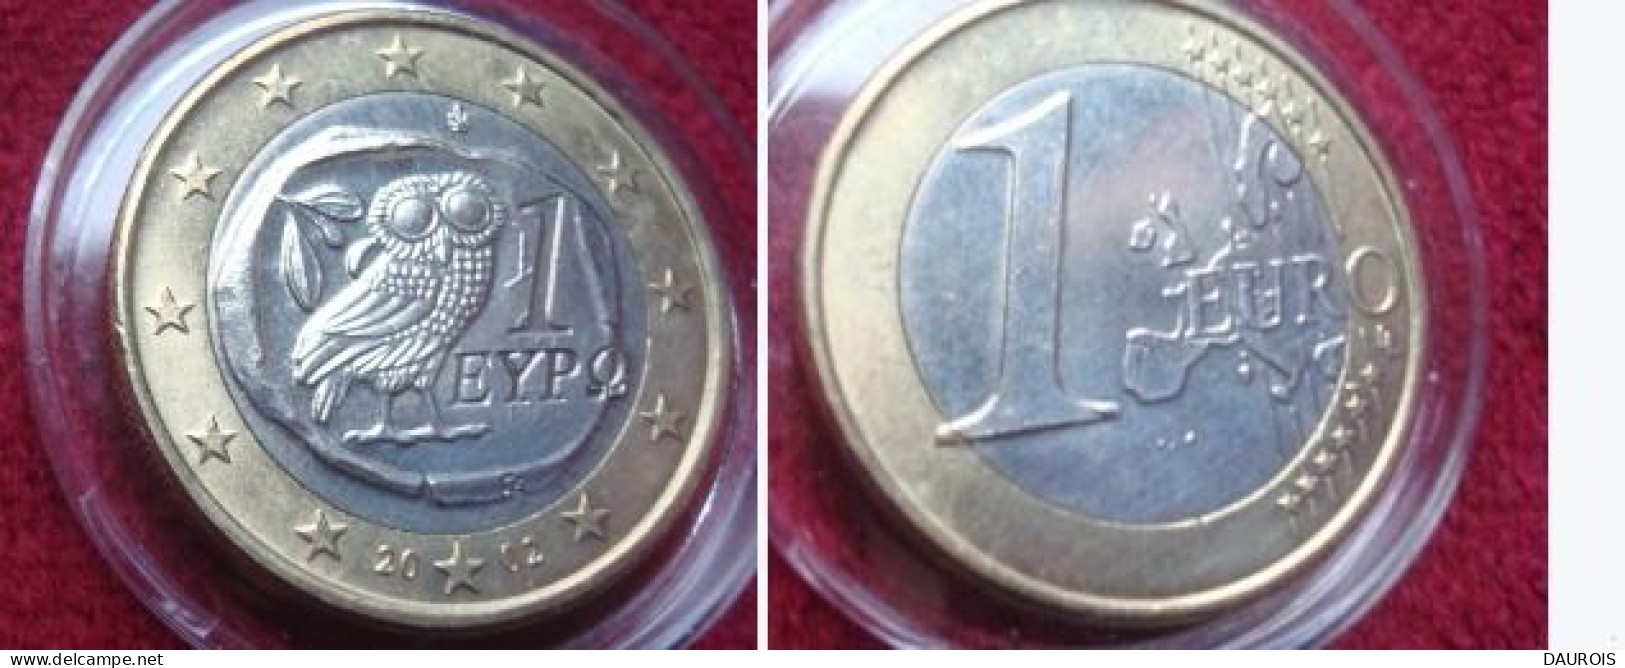 Rare ! Ces 2 1 € Grèce 2002 une frappée d'un S-l'AUTRE MOINS DE GRAINS(CARTE)